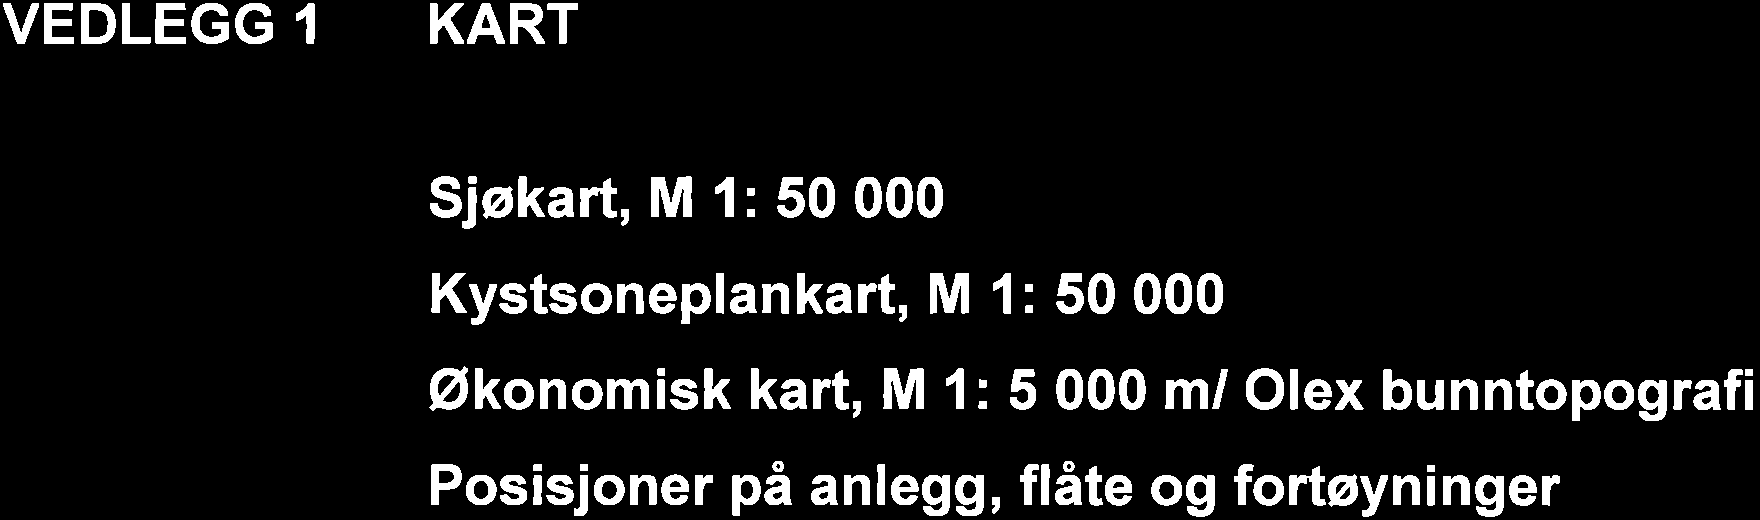 VEDLEGG KART Sjøkart, M l: 50 000 Kystsoneplankart, M 1: 50 000 Økonomisk